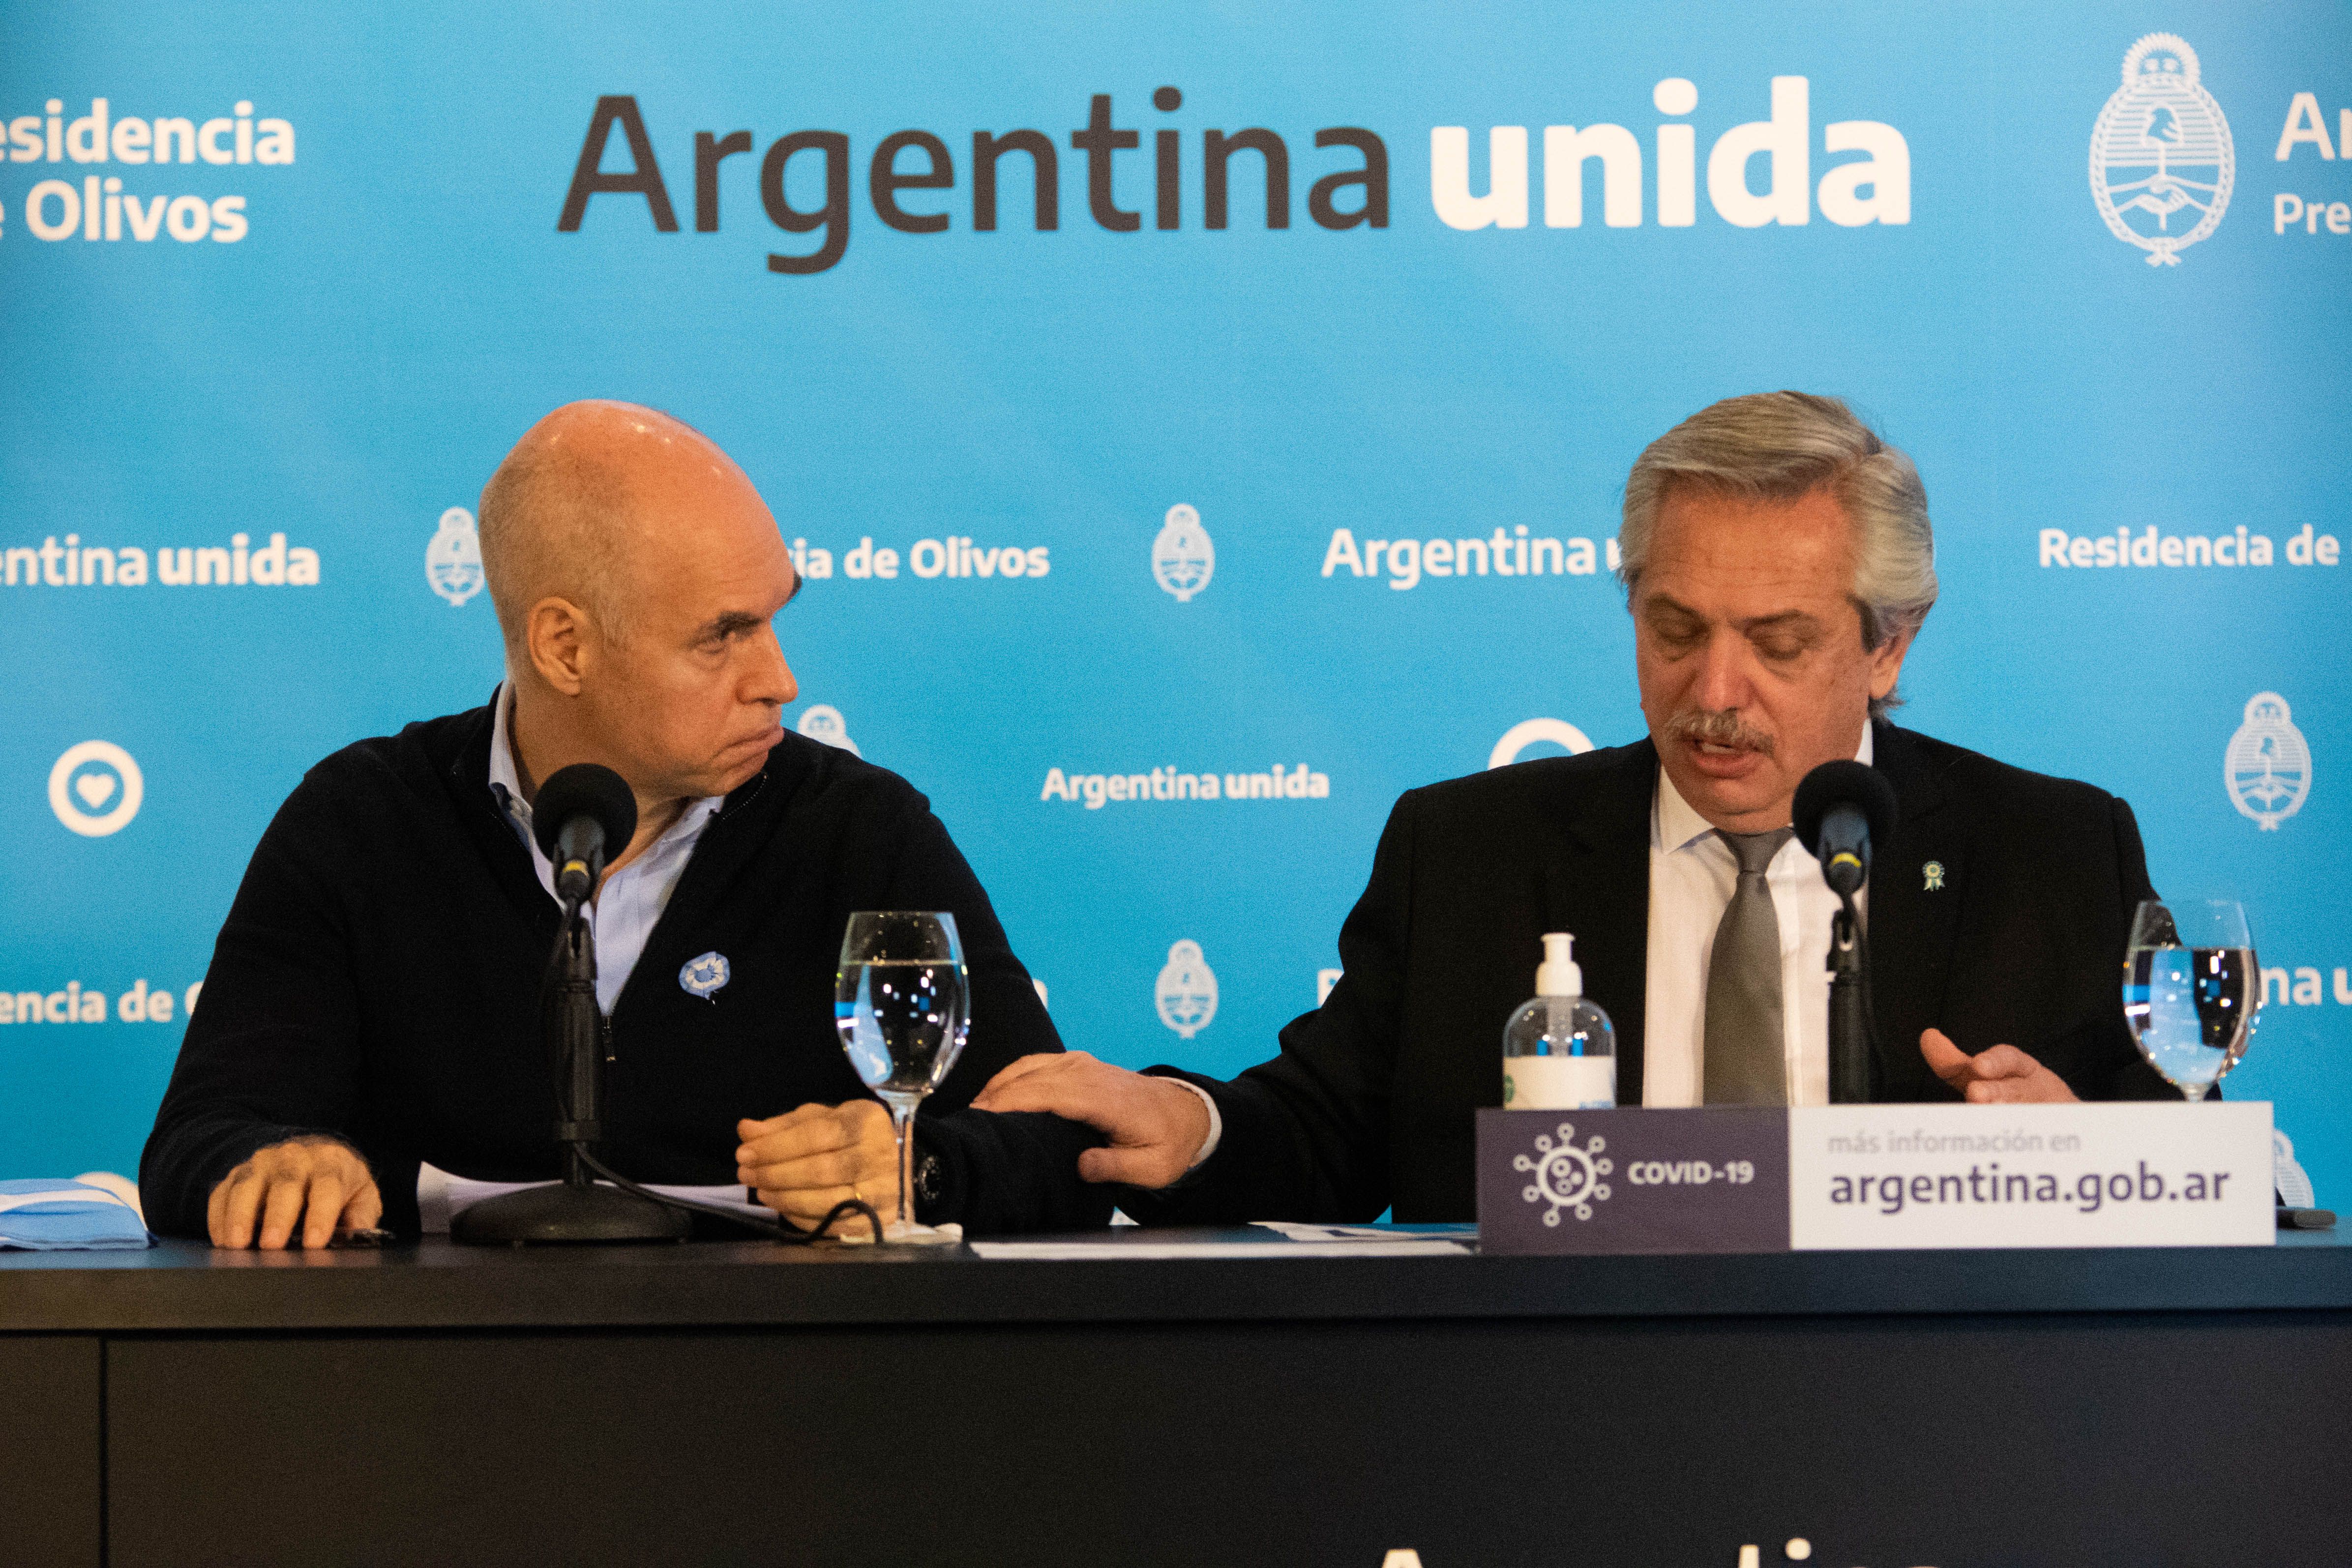 Conferencia prensa Alberto Fernandez - Axel Kicilof - Horacio Larreta - COVID 19 - Coronavirus - Cuarentena Obligatoria - Olivos - Buenos Aires, Argentina